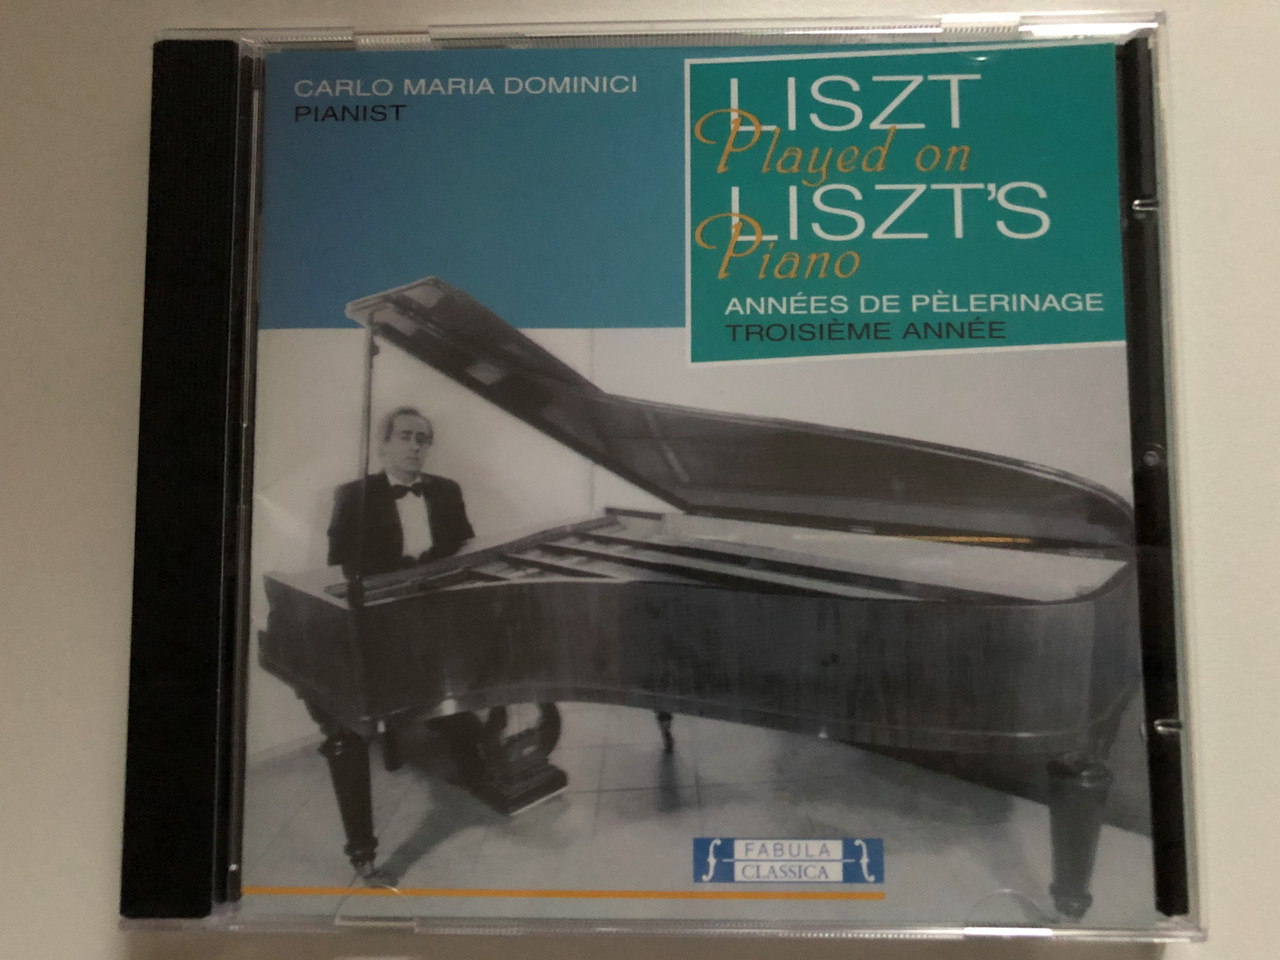 https://cdn10.bigcommerce.com/s-62bdpkt7pb/products/0/images/271865/Carlo_Maria_Dominici_pianist_-_Liszt_Played_On_Liszts_Piano_-_Annees_De_Pelerinage_Fabula_Classica_Audio_CD_2001_FAB_29901-2_1__33345.1680510203.1280.1280.JPG?c=2&_gl=1*s7qfte*_ga*MjA2NTIxMjE2MC4xNTkwNTEyNTMy*_ga_WS2VZYPC6G*MTY4MDUwMzk3Ni44MzAuMS4xNjgwNTEwMTkzLjYwLjAuMA..